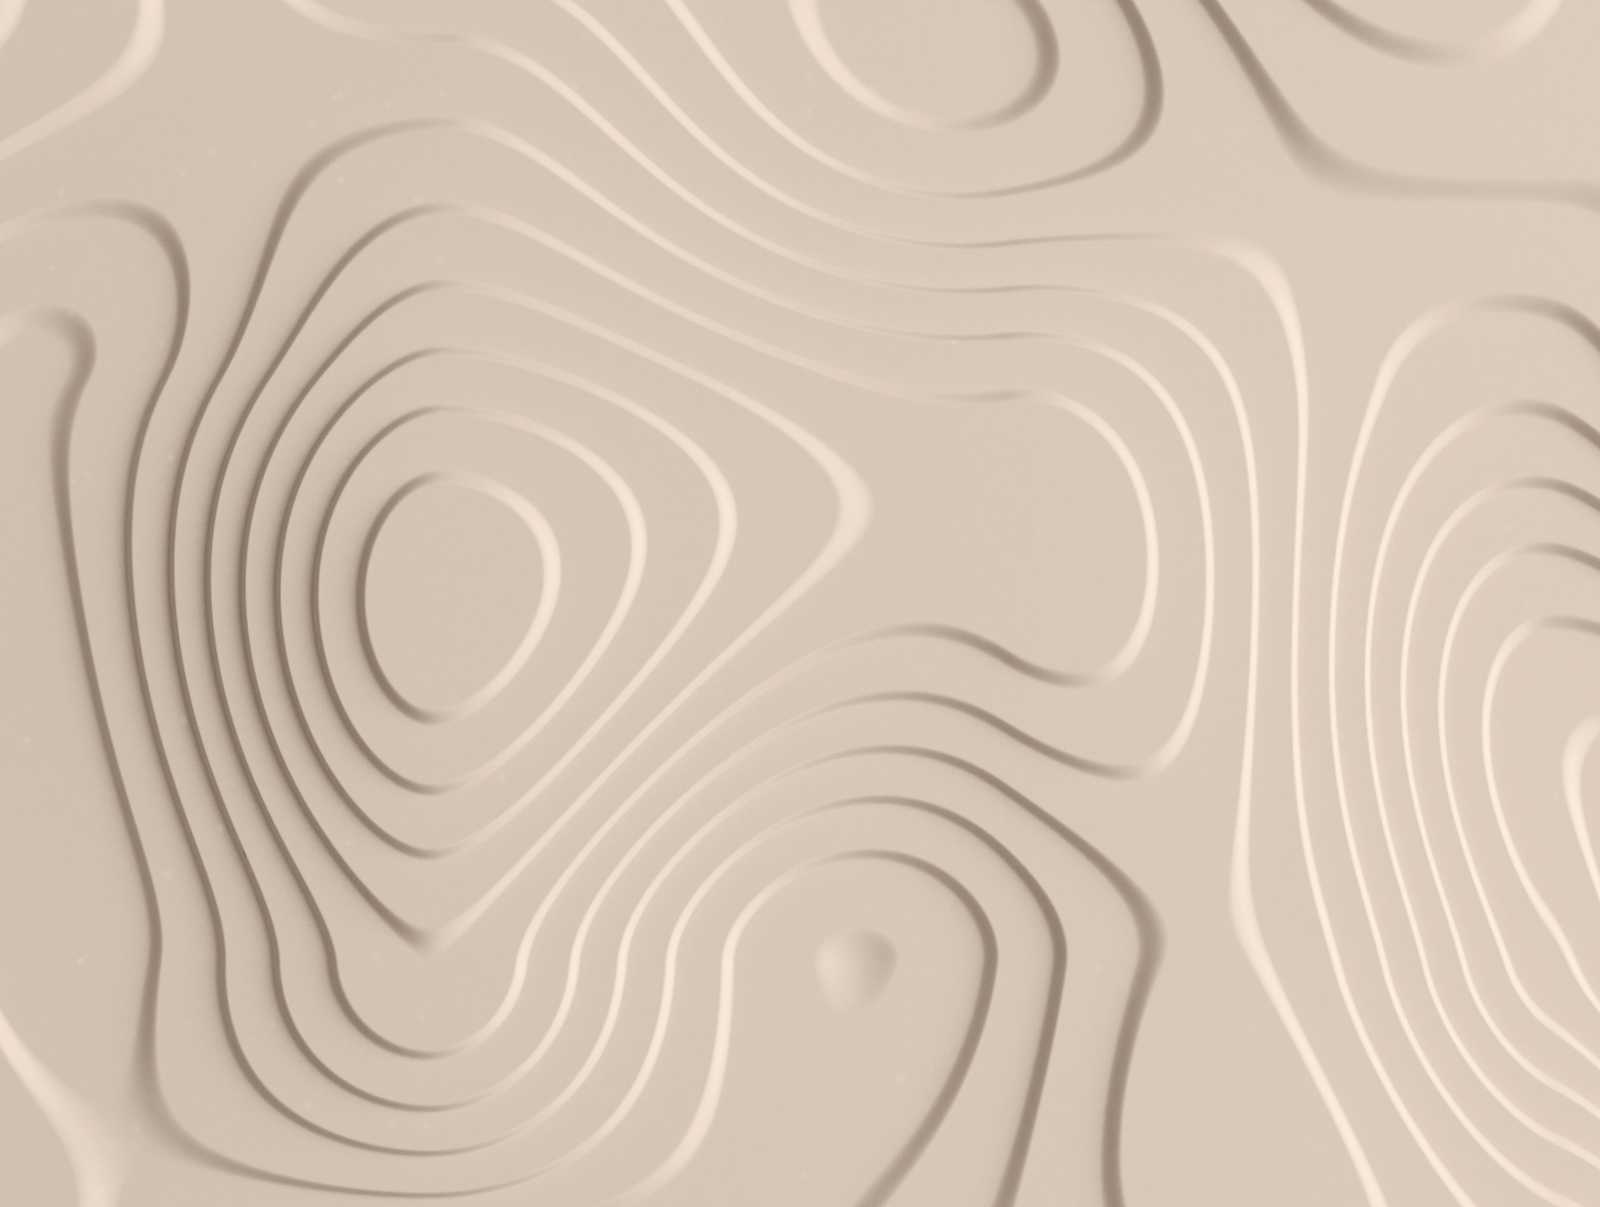             Tapeten-Neuheit – 3D Motivtapete mit Typografie-Linien & Schattier-Effekt
        